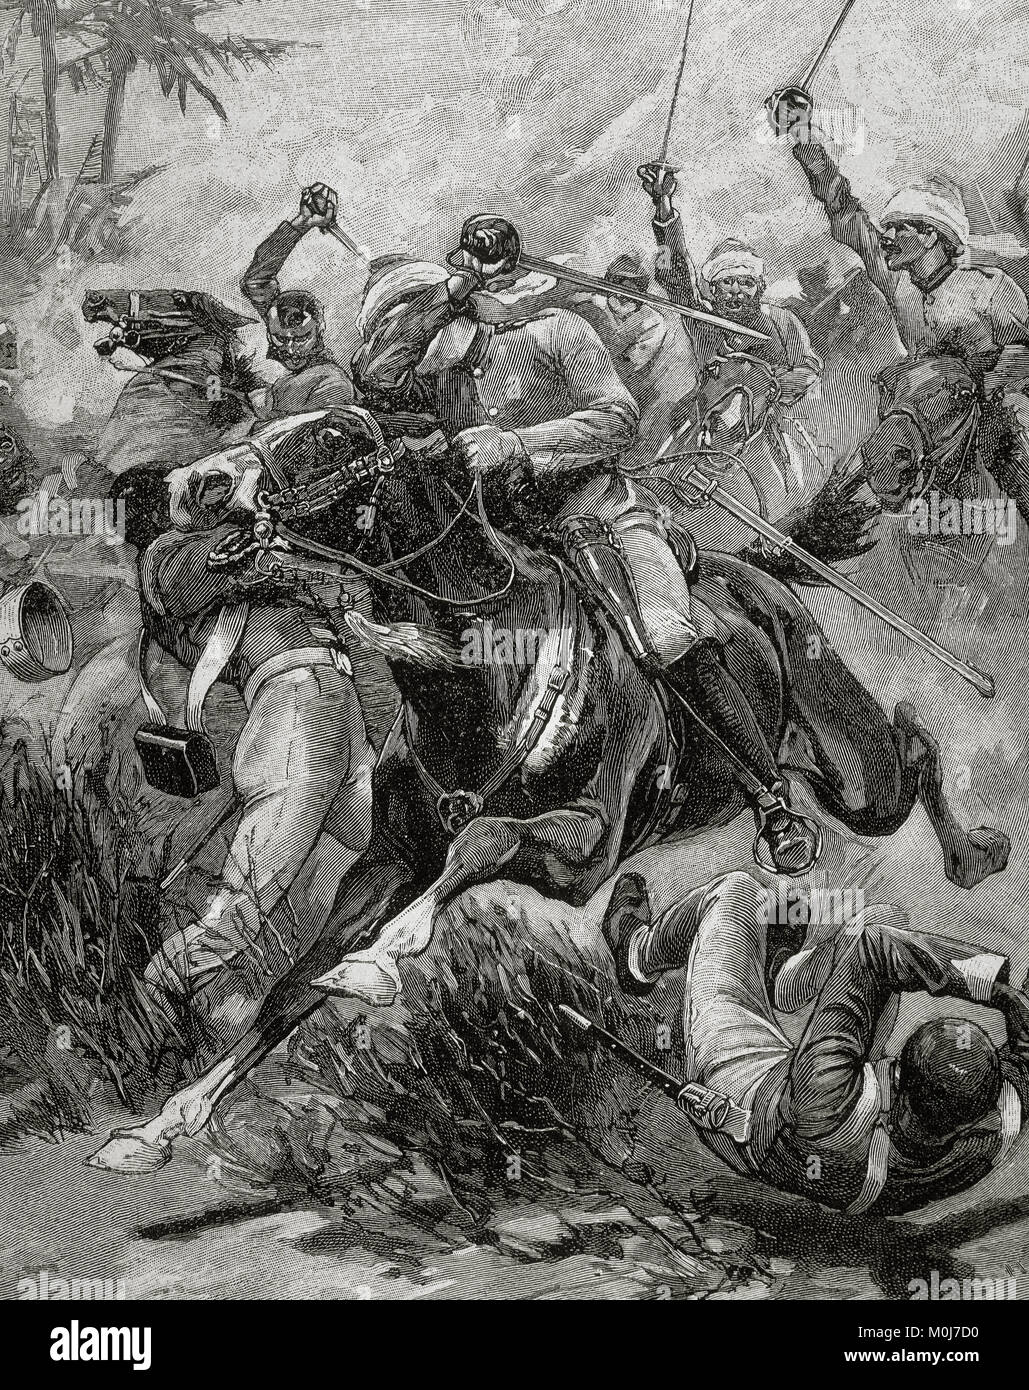 Indische Meuterei oder Sepoy Meuterei (1857-1858). Rebelion gegen die britische Herrschaft in Indien. Es wurde von indischen Truppen in den Dienst der Britischen begonnen. Stockfoto